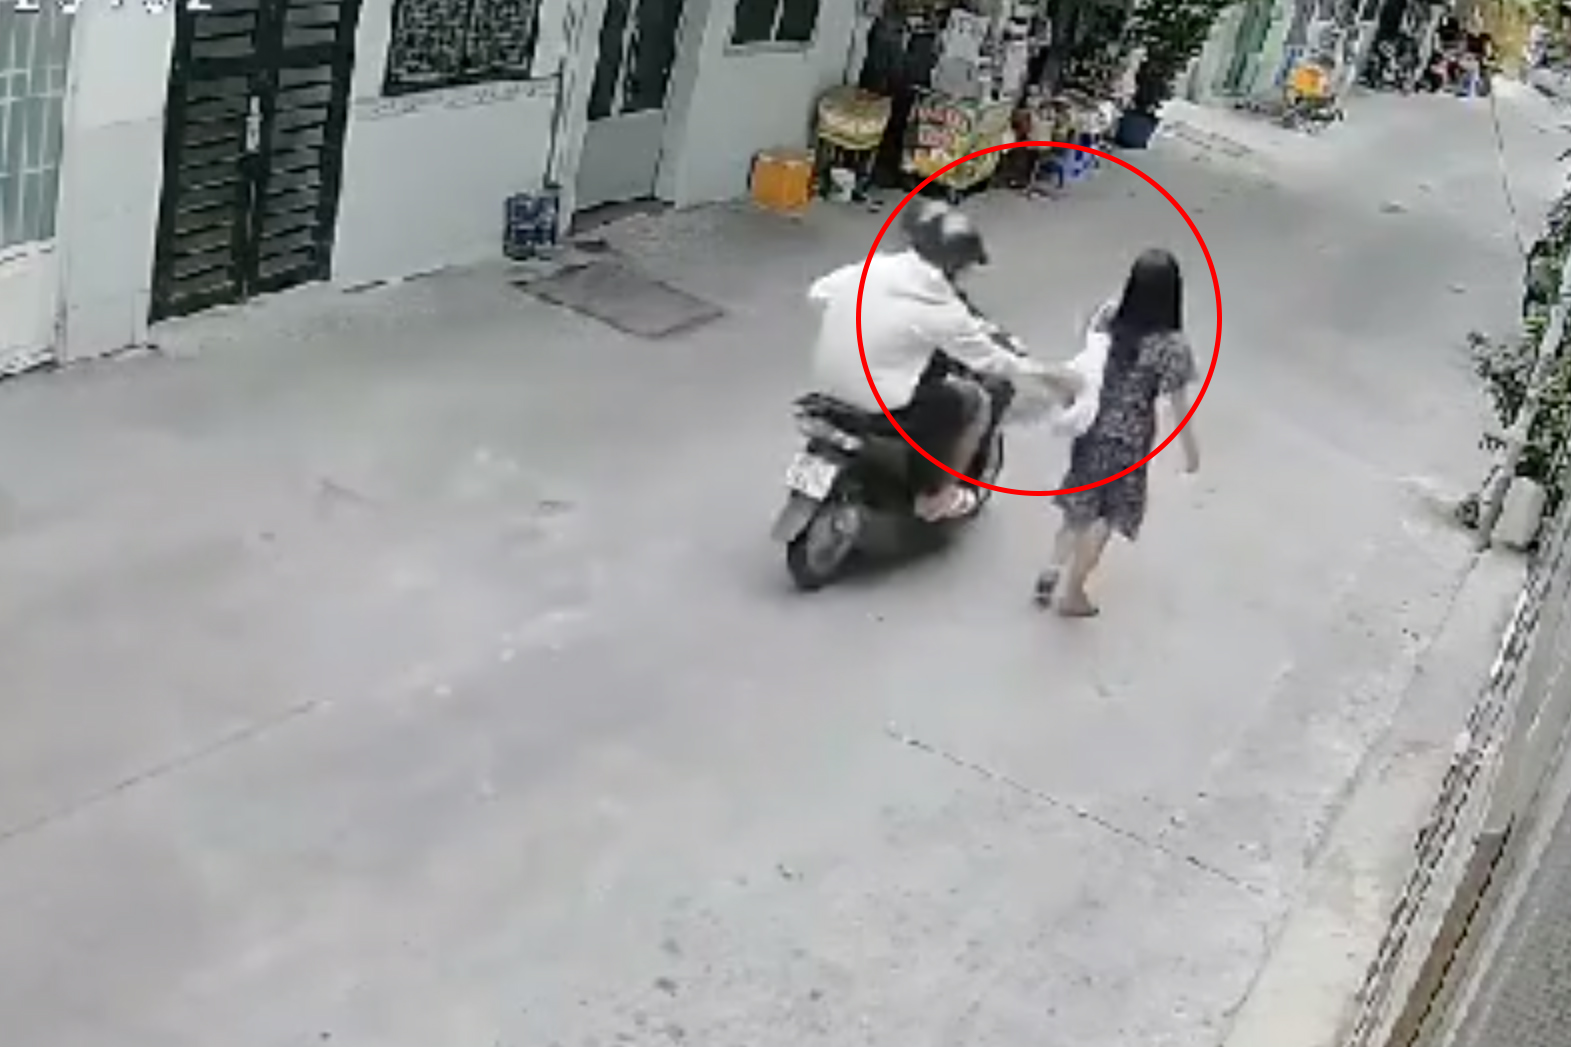 Camera ghi cảnh người phụ nữ bị giật túi xách trong 1 giây ở TPHCM